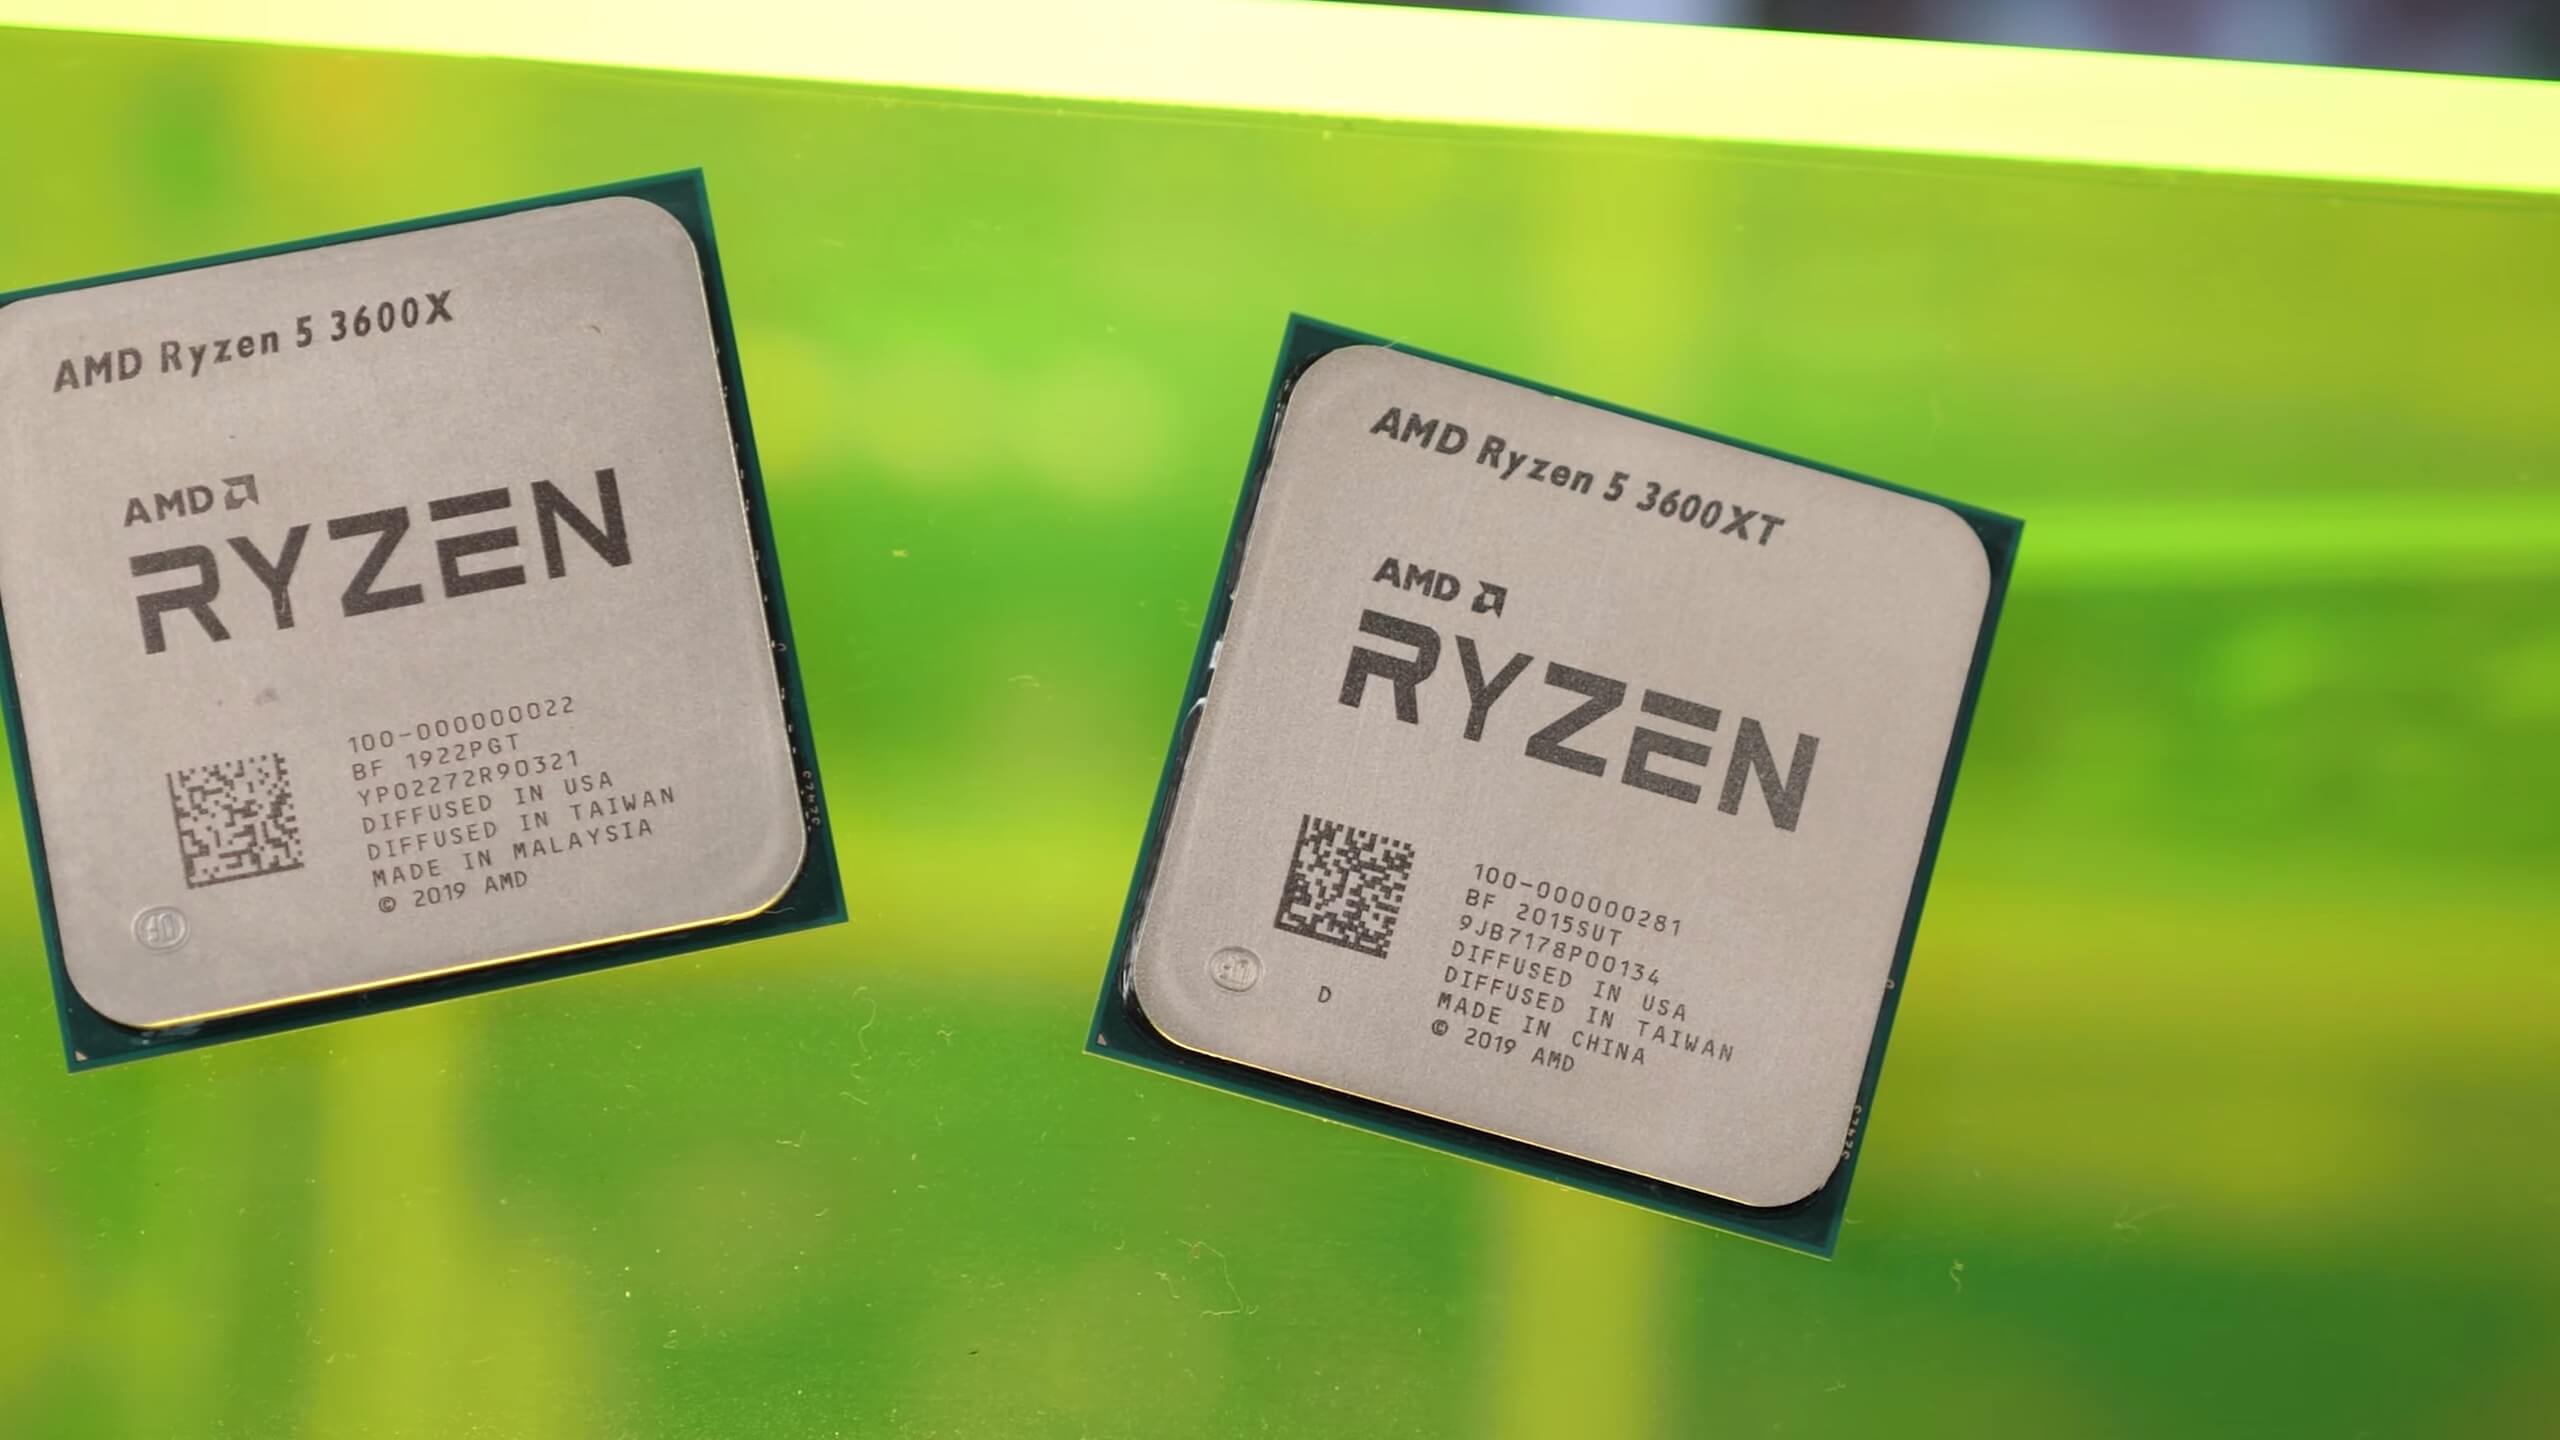 1648007471 613 Revision de AMD Ryzen 3600XT 3800XT y 3900XT